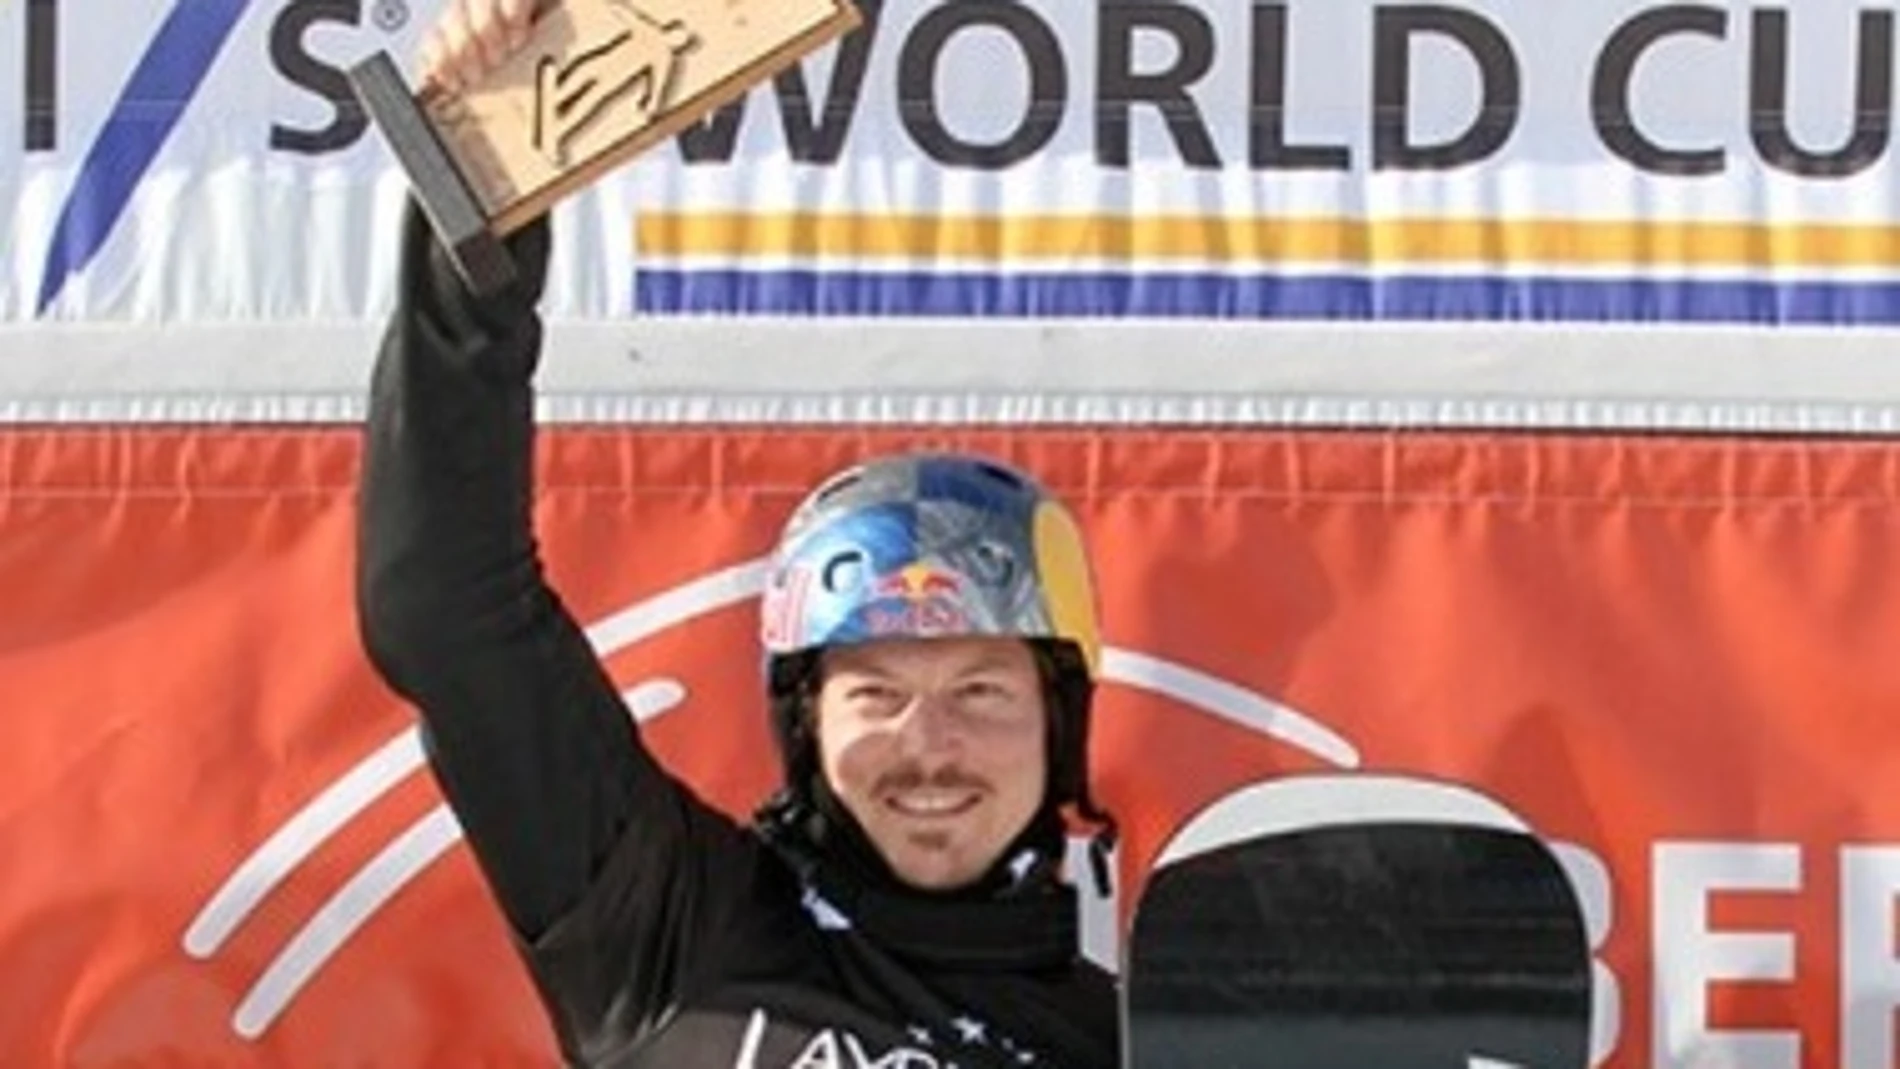 Snowboard.- Fallece el campeón mundial Alex Pullin en un accidente de pesca submarina